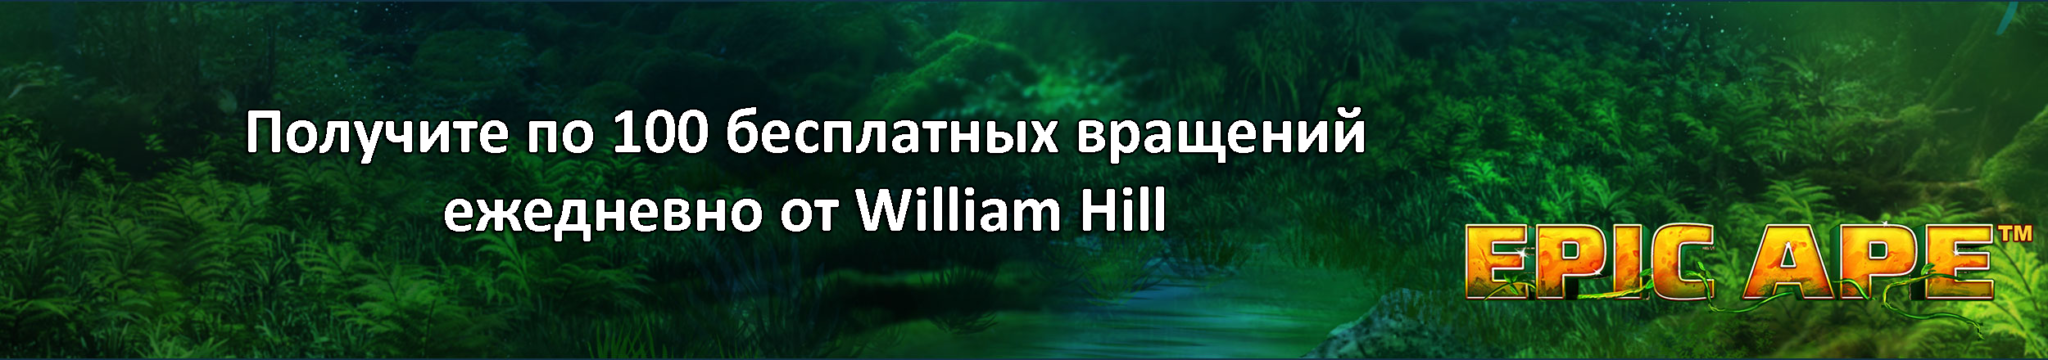 Получите по 100 бесплатных вращений ежедневно от William Hill